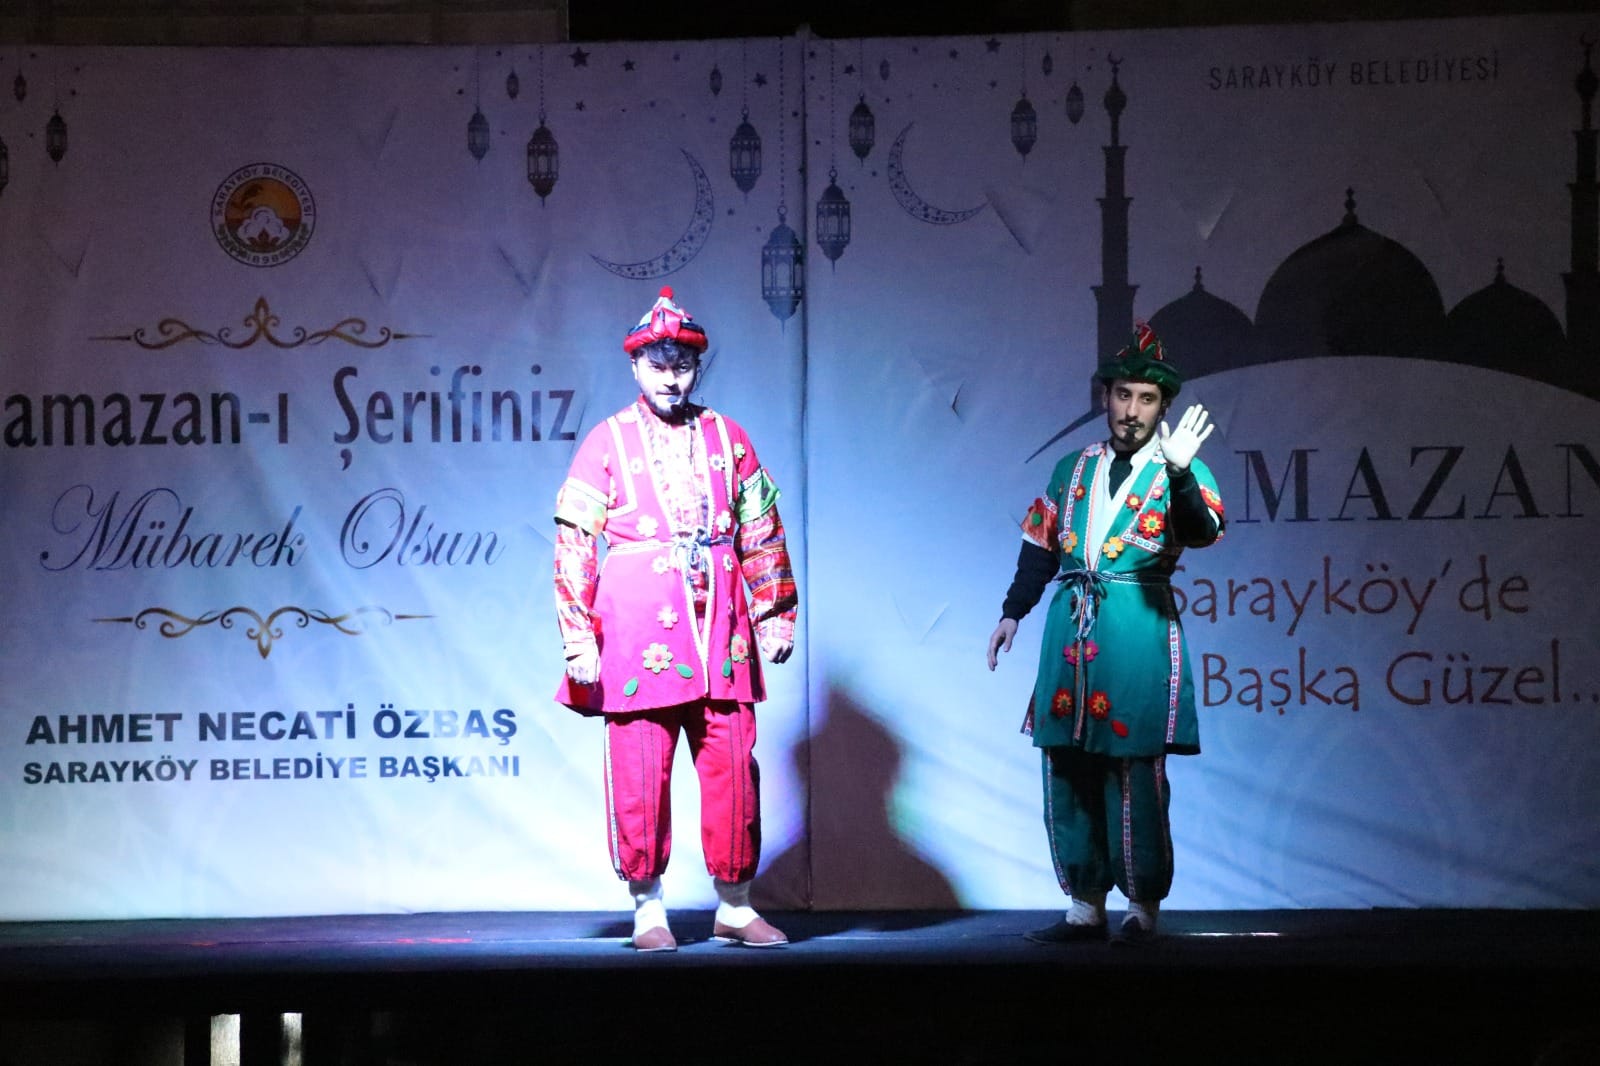 Sarayköy Belediyesi eski Ramazanları aratmayan birbirinden güzel etkinlikleri vatandaşlarla buluşturuyor. Ramazan etkinlikleri ilk gününde renkli görüntülere sahne oldu, vatandaşların yoğun ilgisiyle gerçekleştirildi.